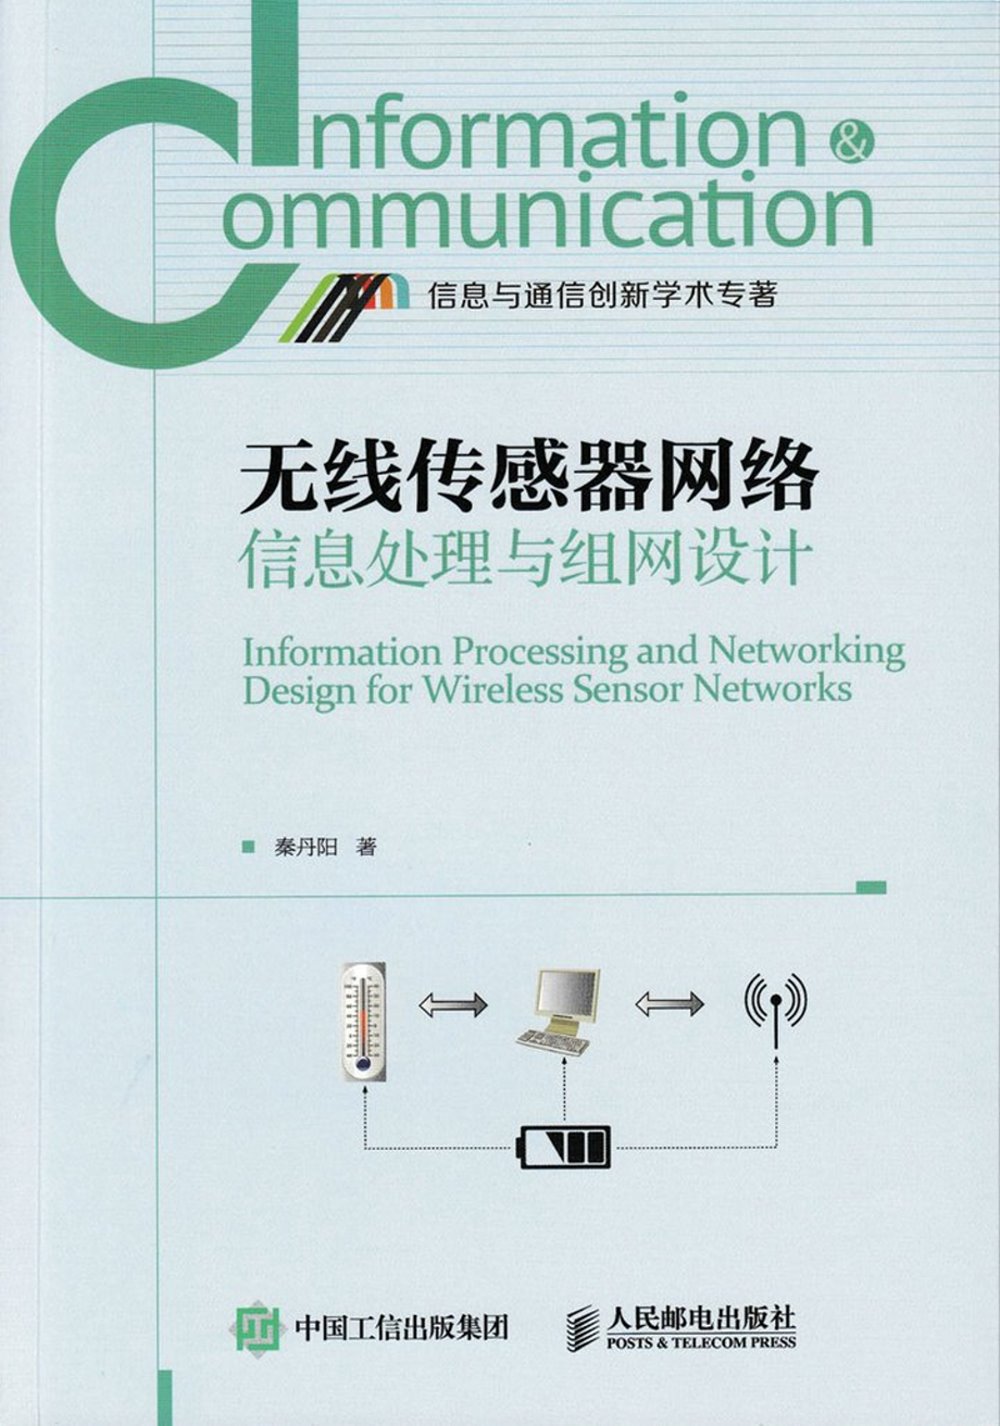 無線傳感器網絡信息處理與組網設計